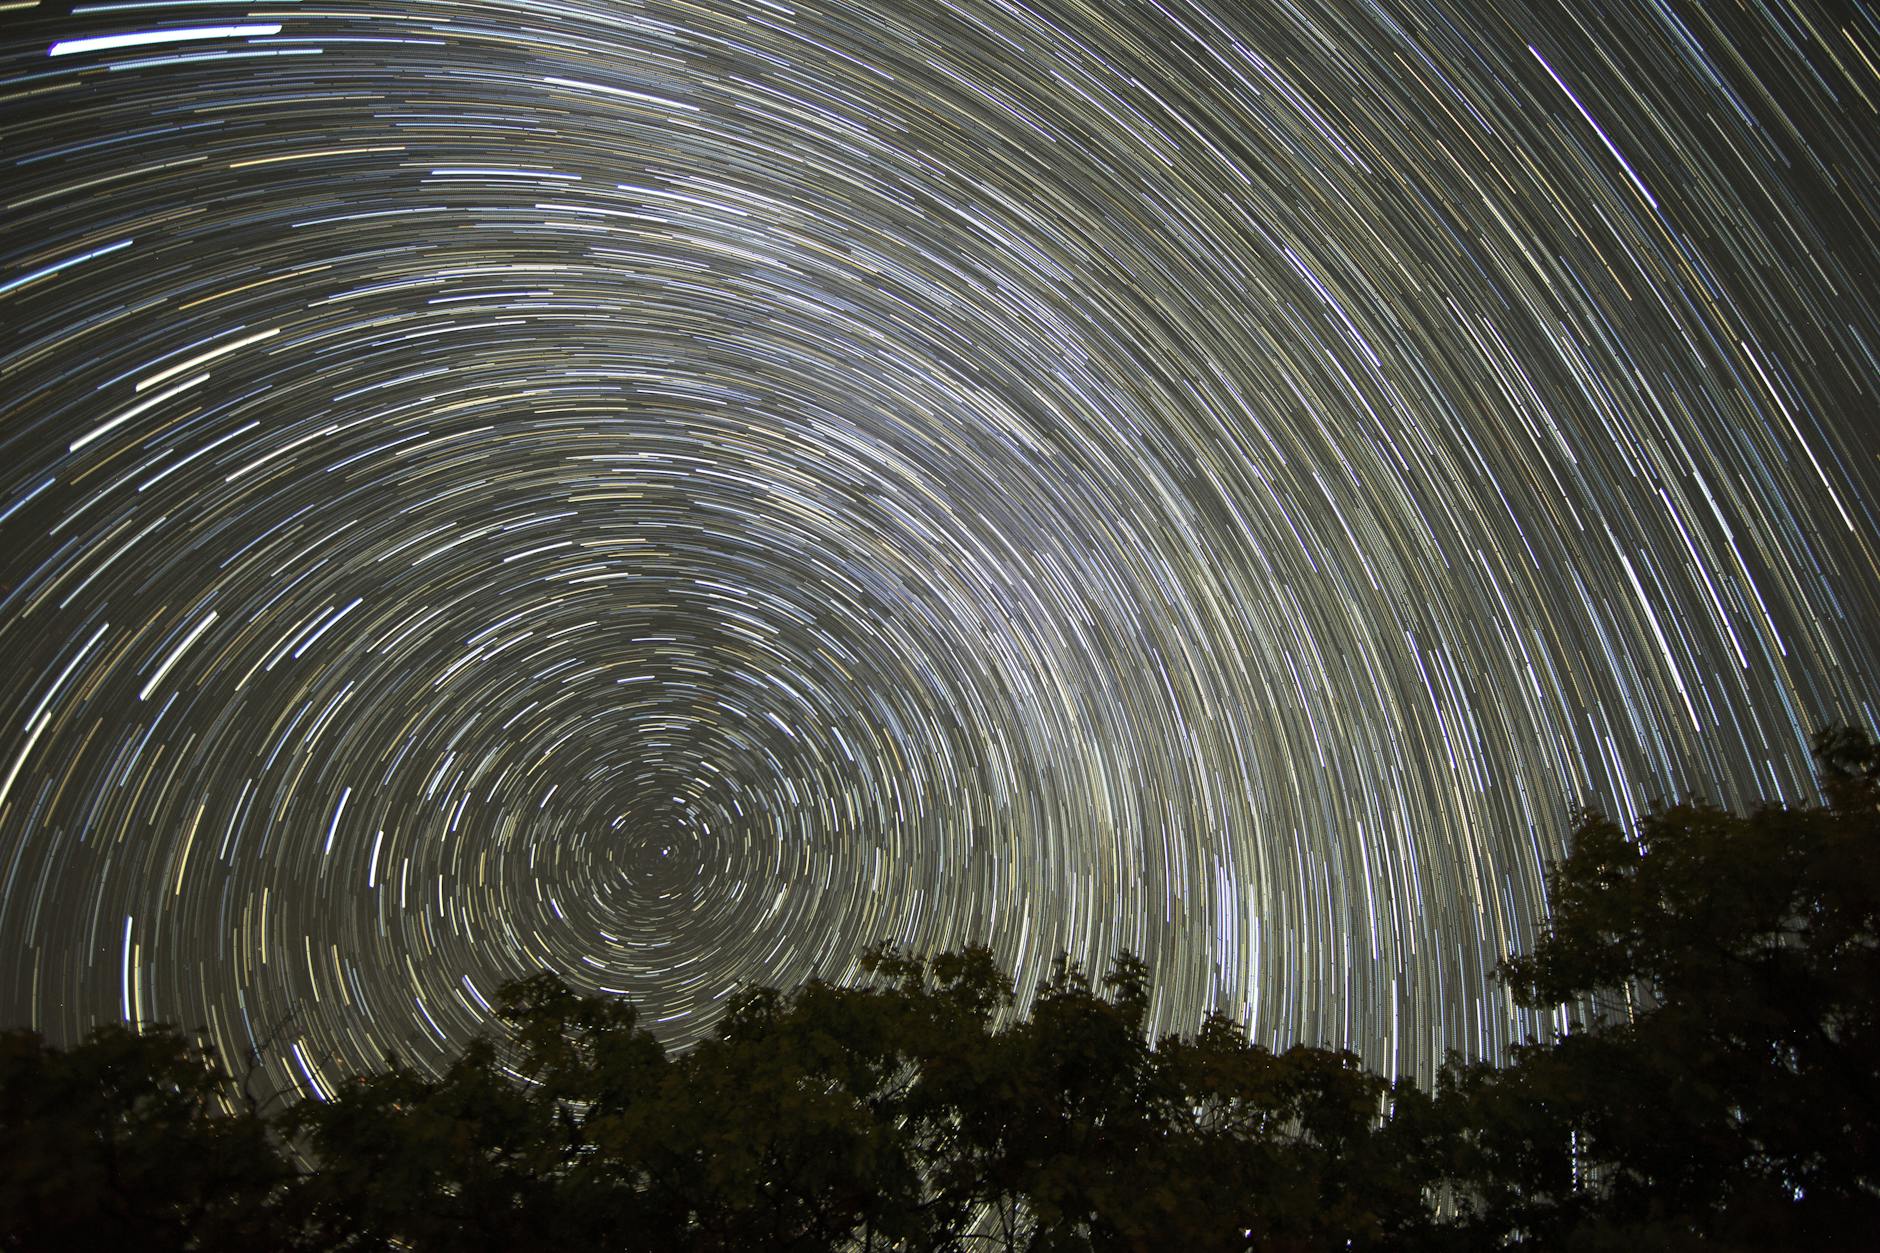 Звёздное небо и космос в картинках - Страница 20 Nature-stars-night-sky-903961